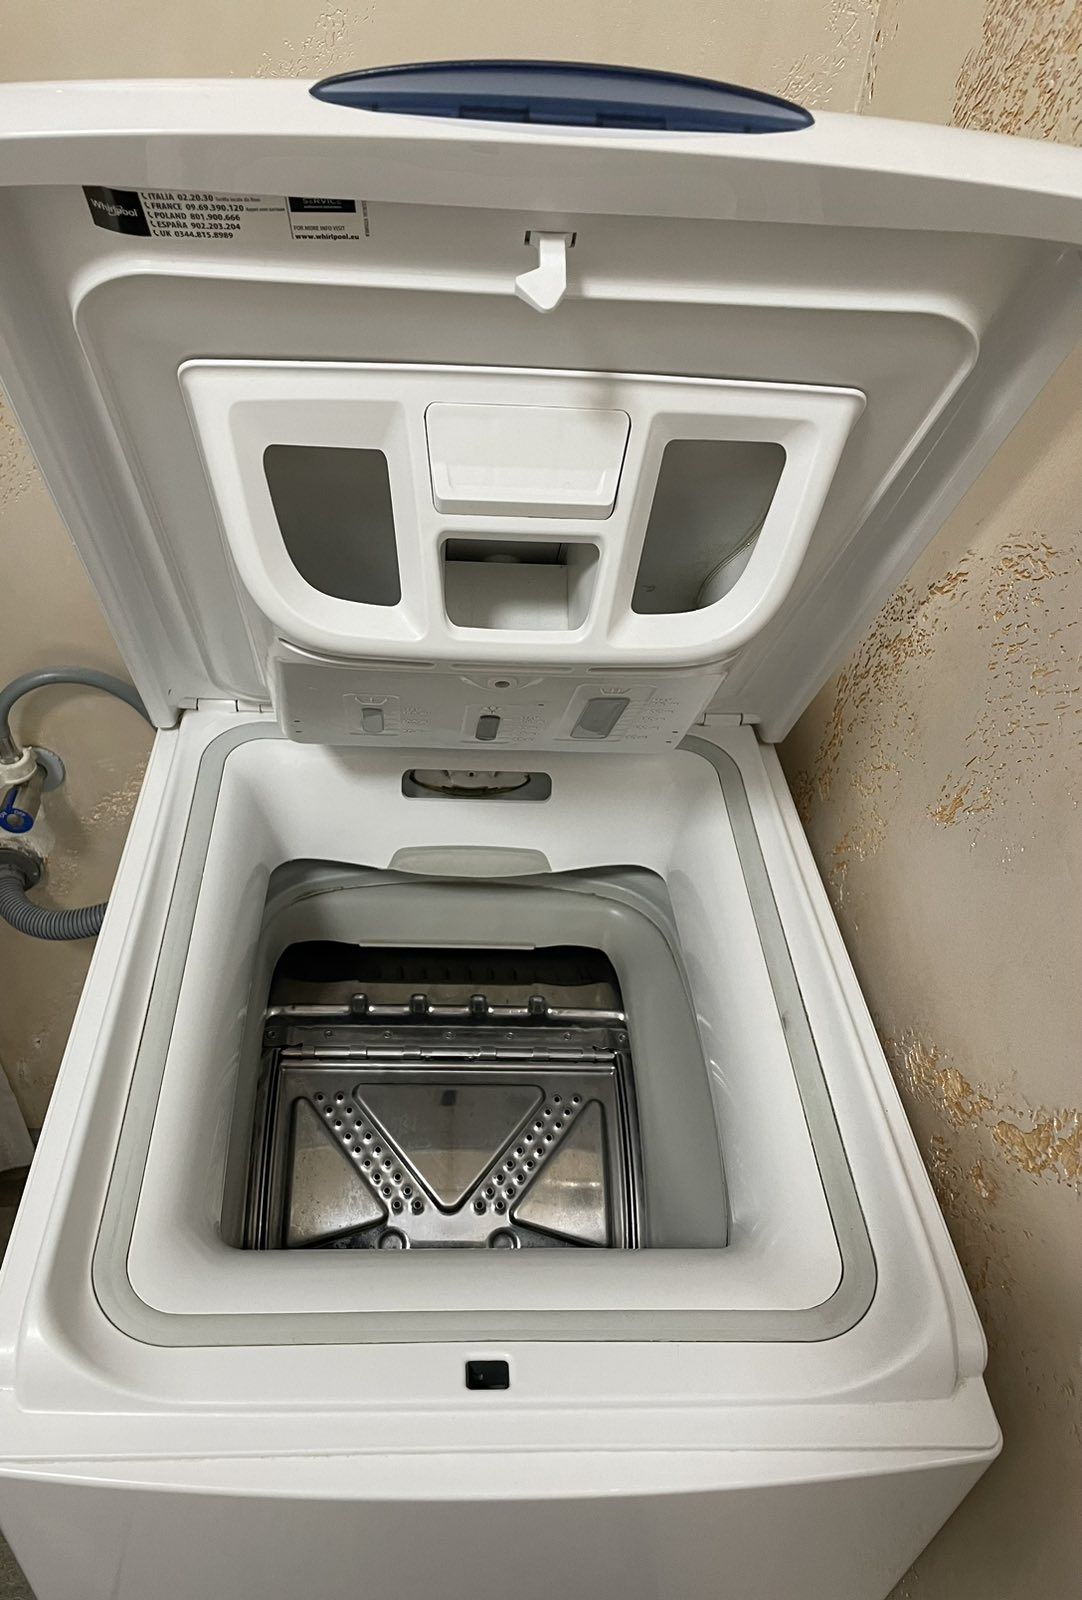 пральна машина машинка whirlpool 5.5 kg 1000 rpm з манітором 21 року